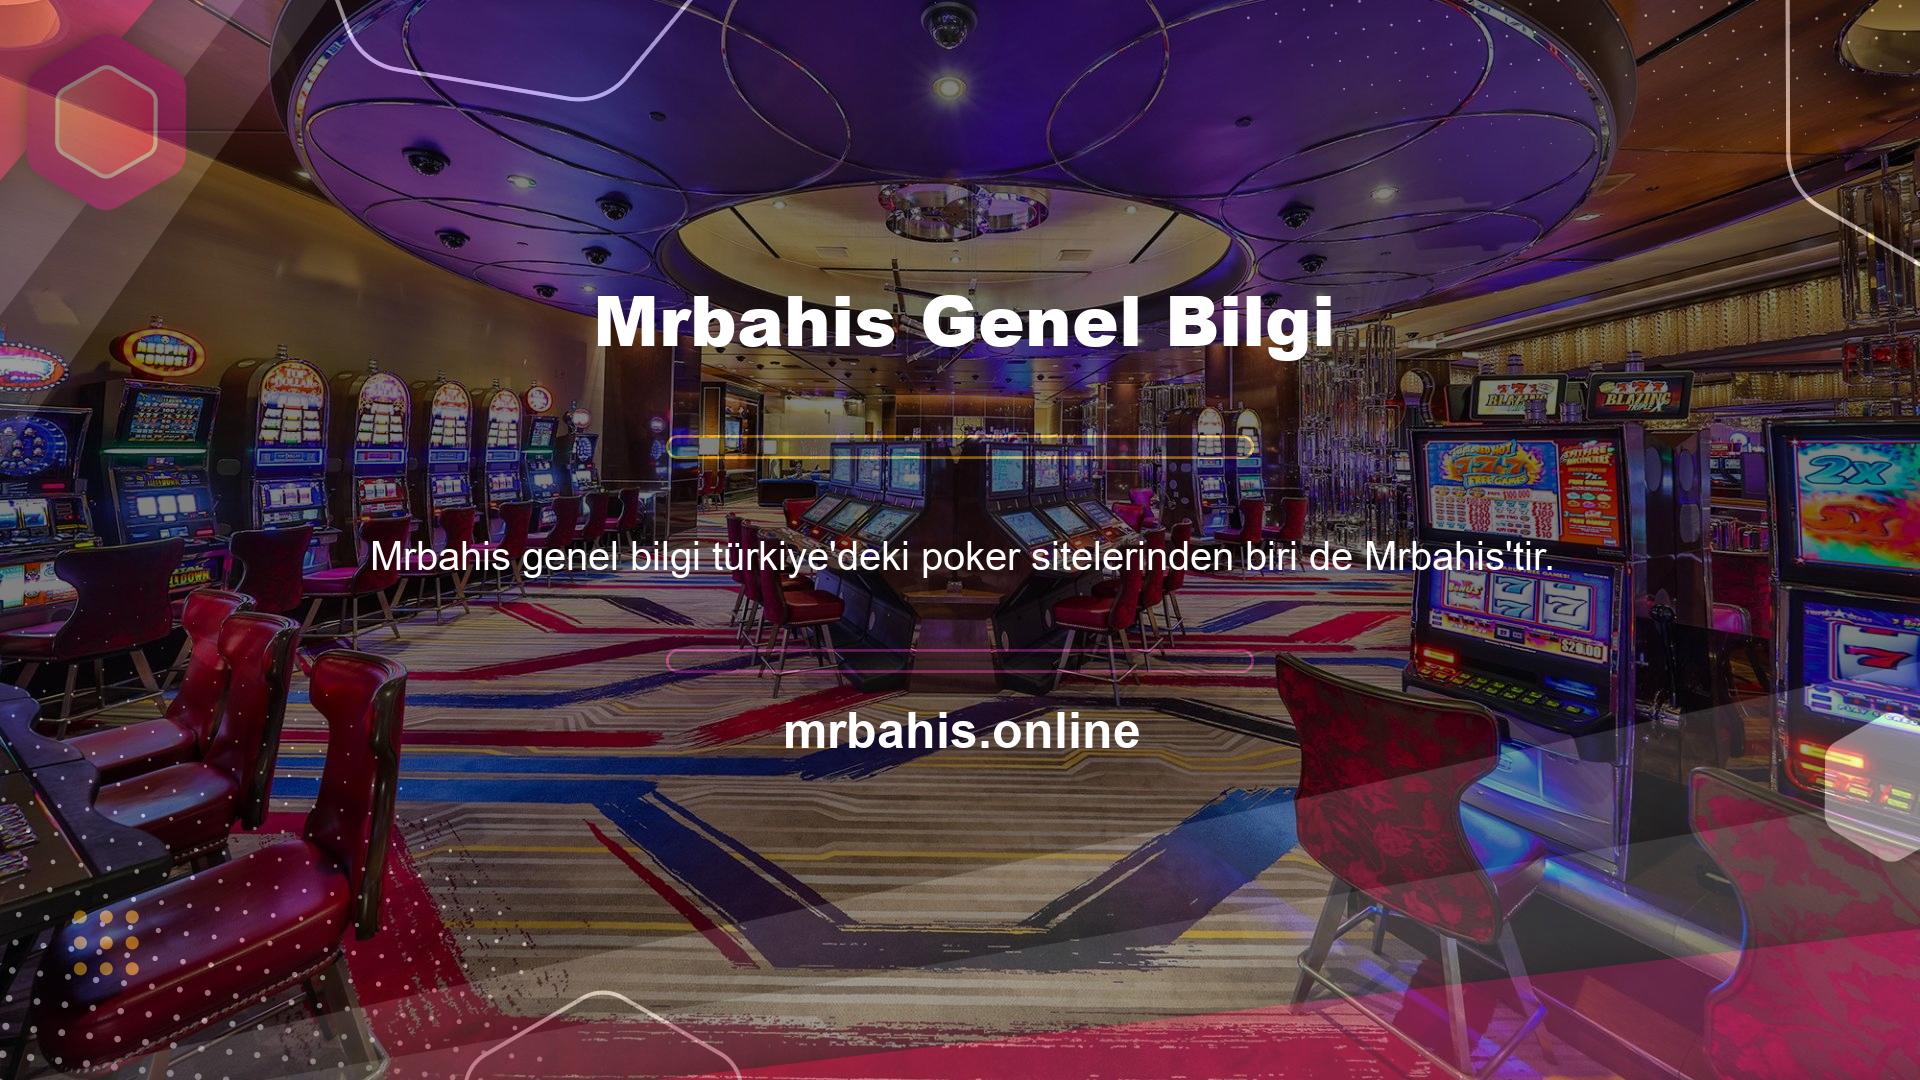 Mrbahis, ülkemizdeki tüm casino oyunlarına ilgi duyan ve hayran olan casino oyuncularının favori şirketlerinden biridir